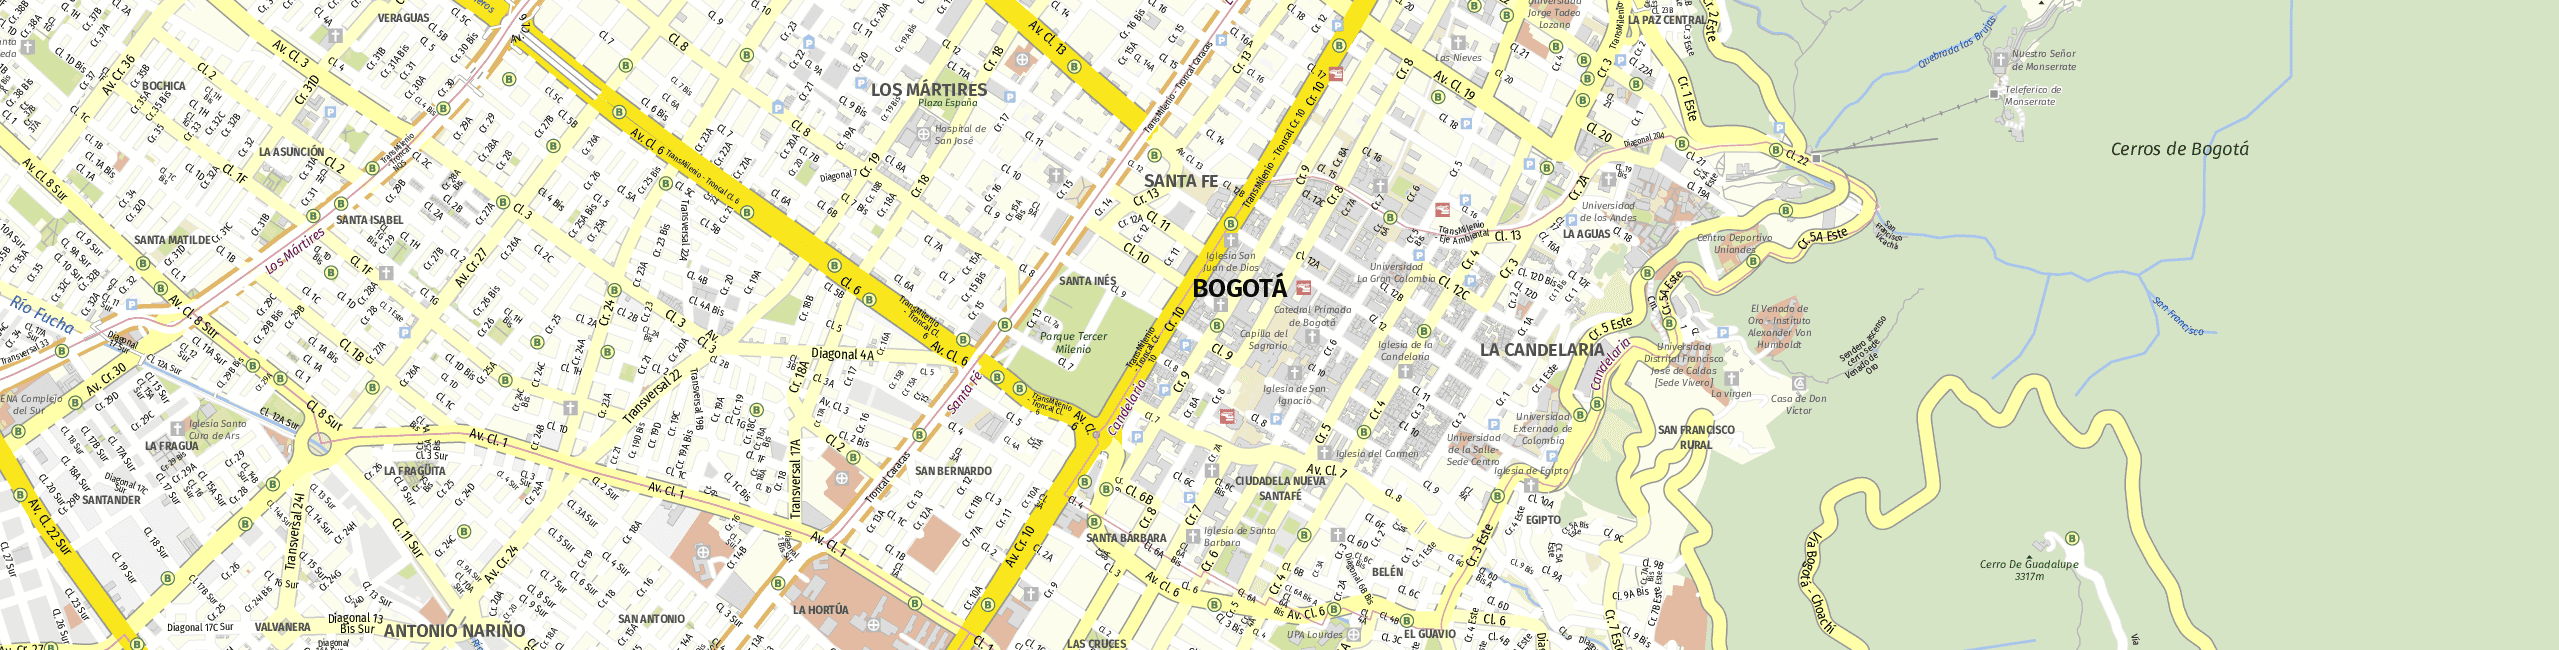 Stadtplan Bogota zum Downloaden.